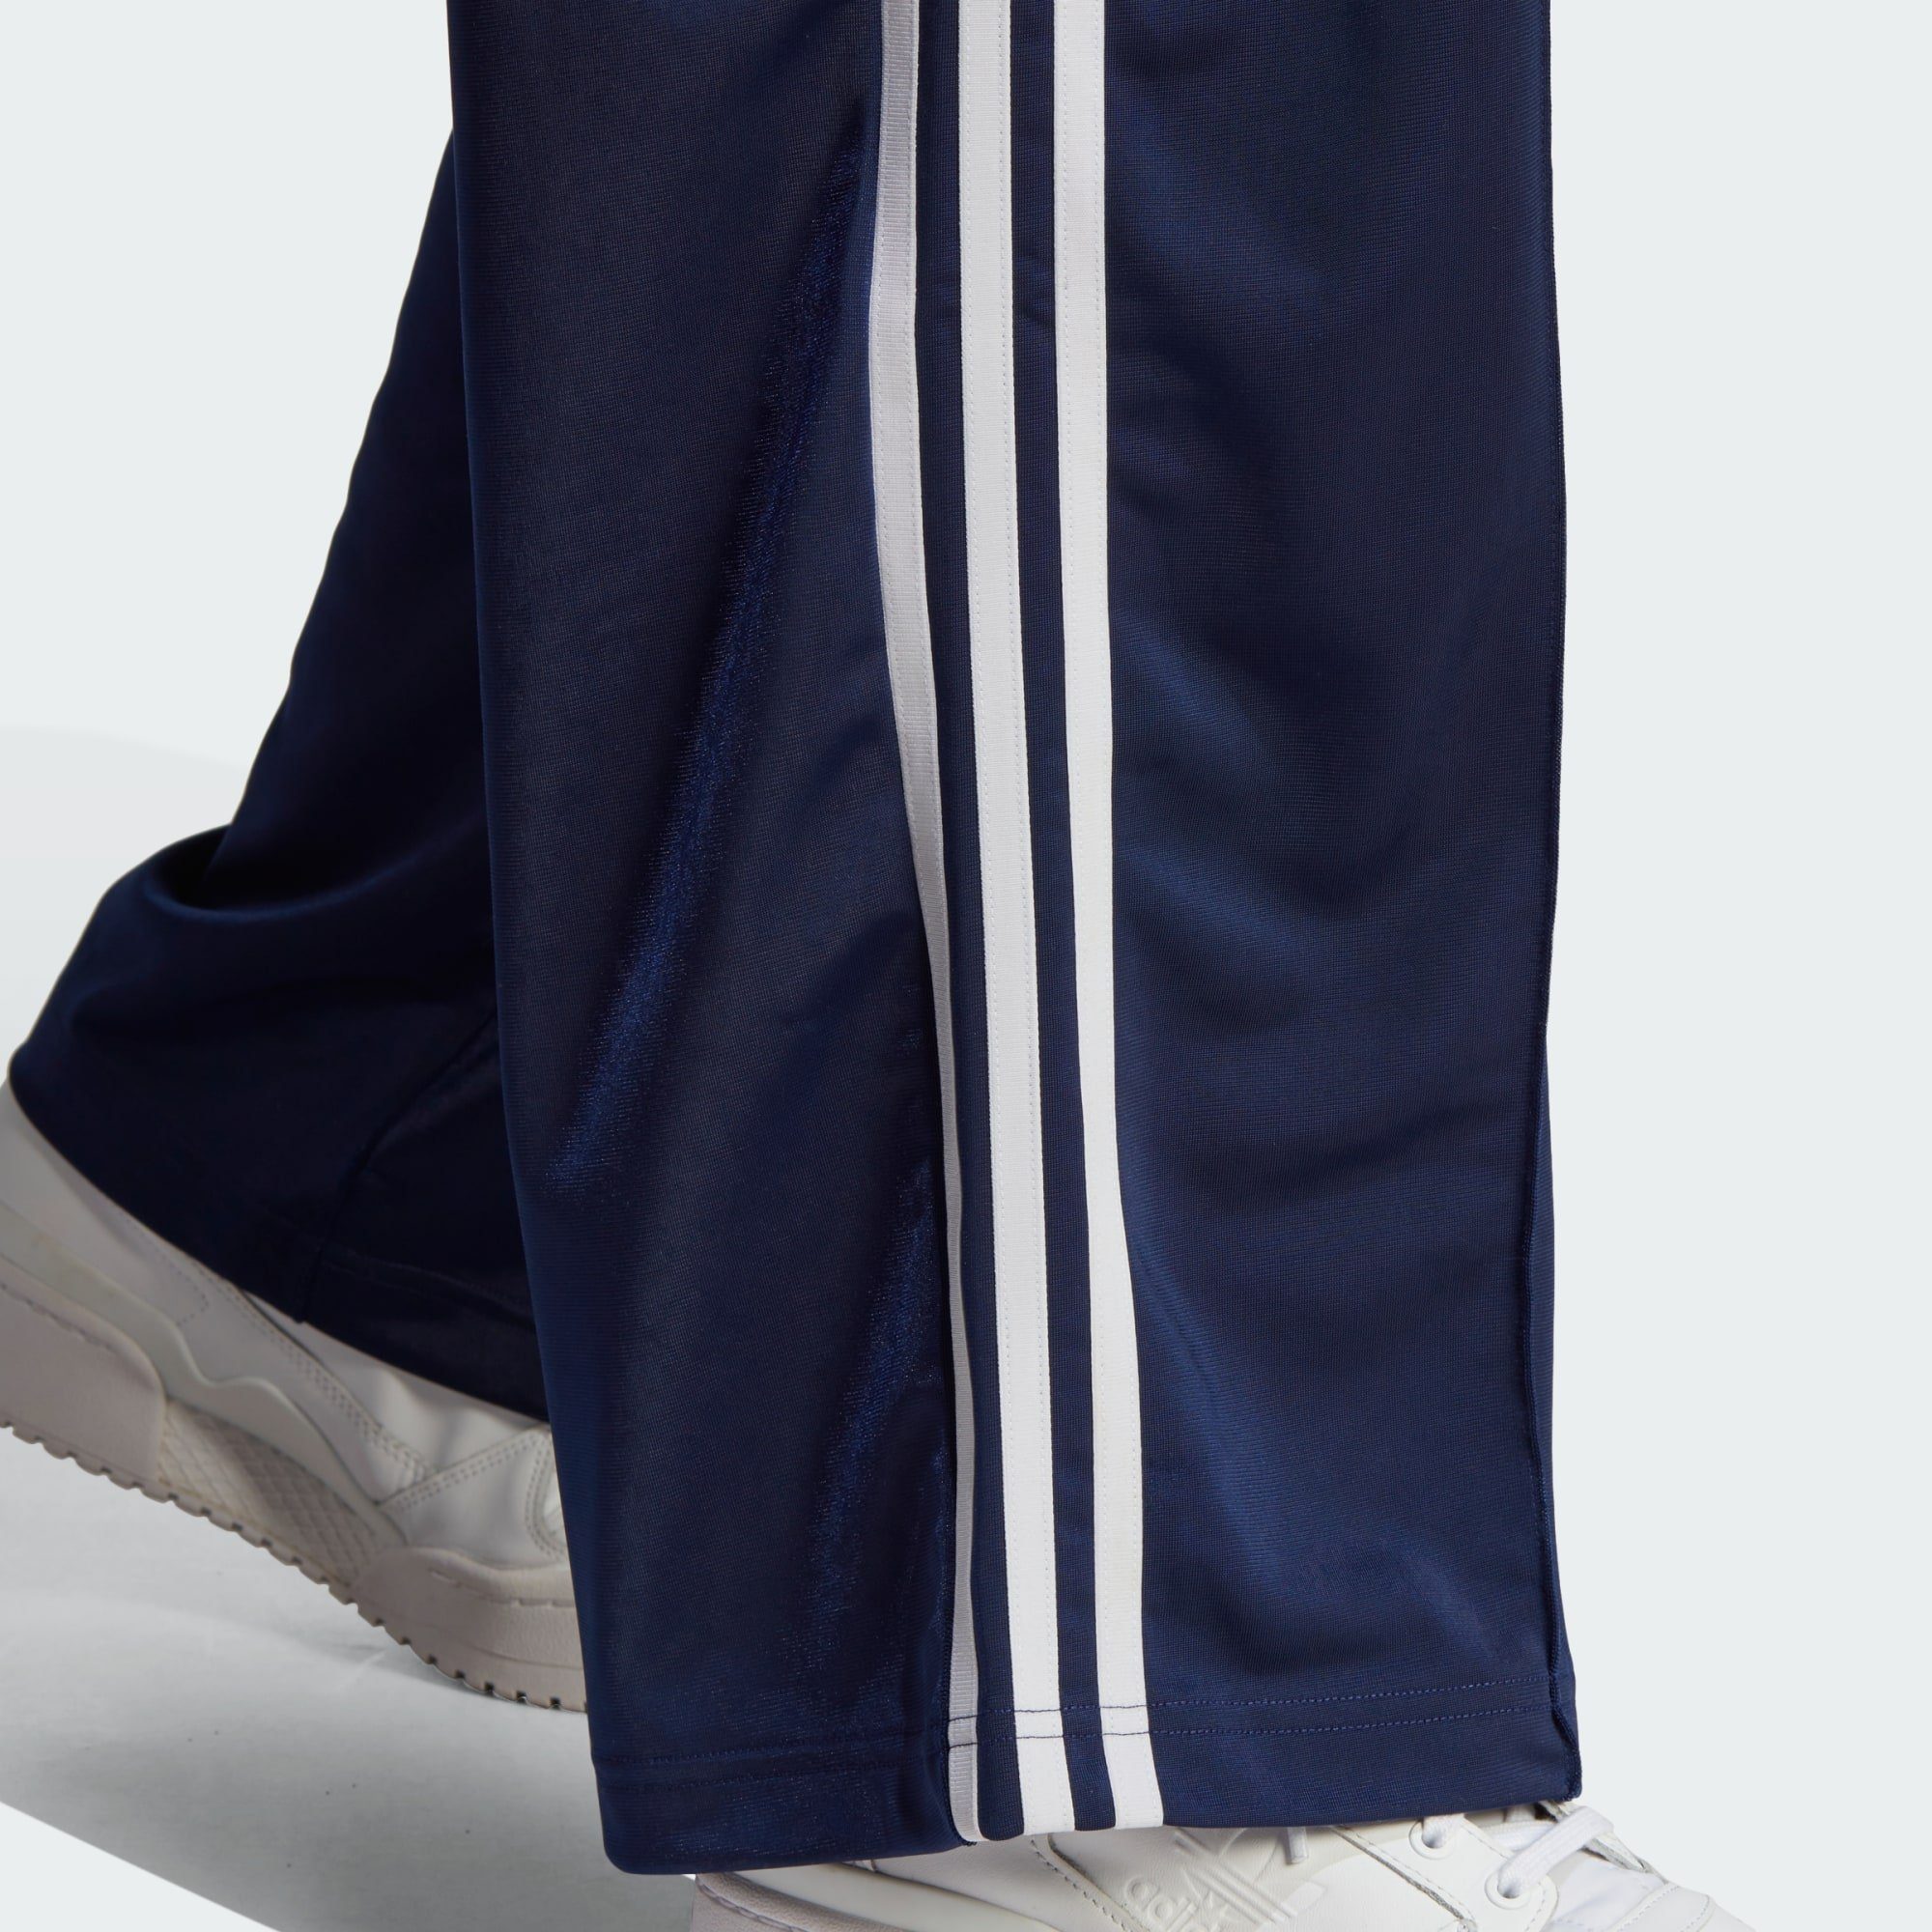 TRAININGSHOSE FIREBIRD Jogginghose Originals adidas Blue LOOSE Dark